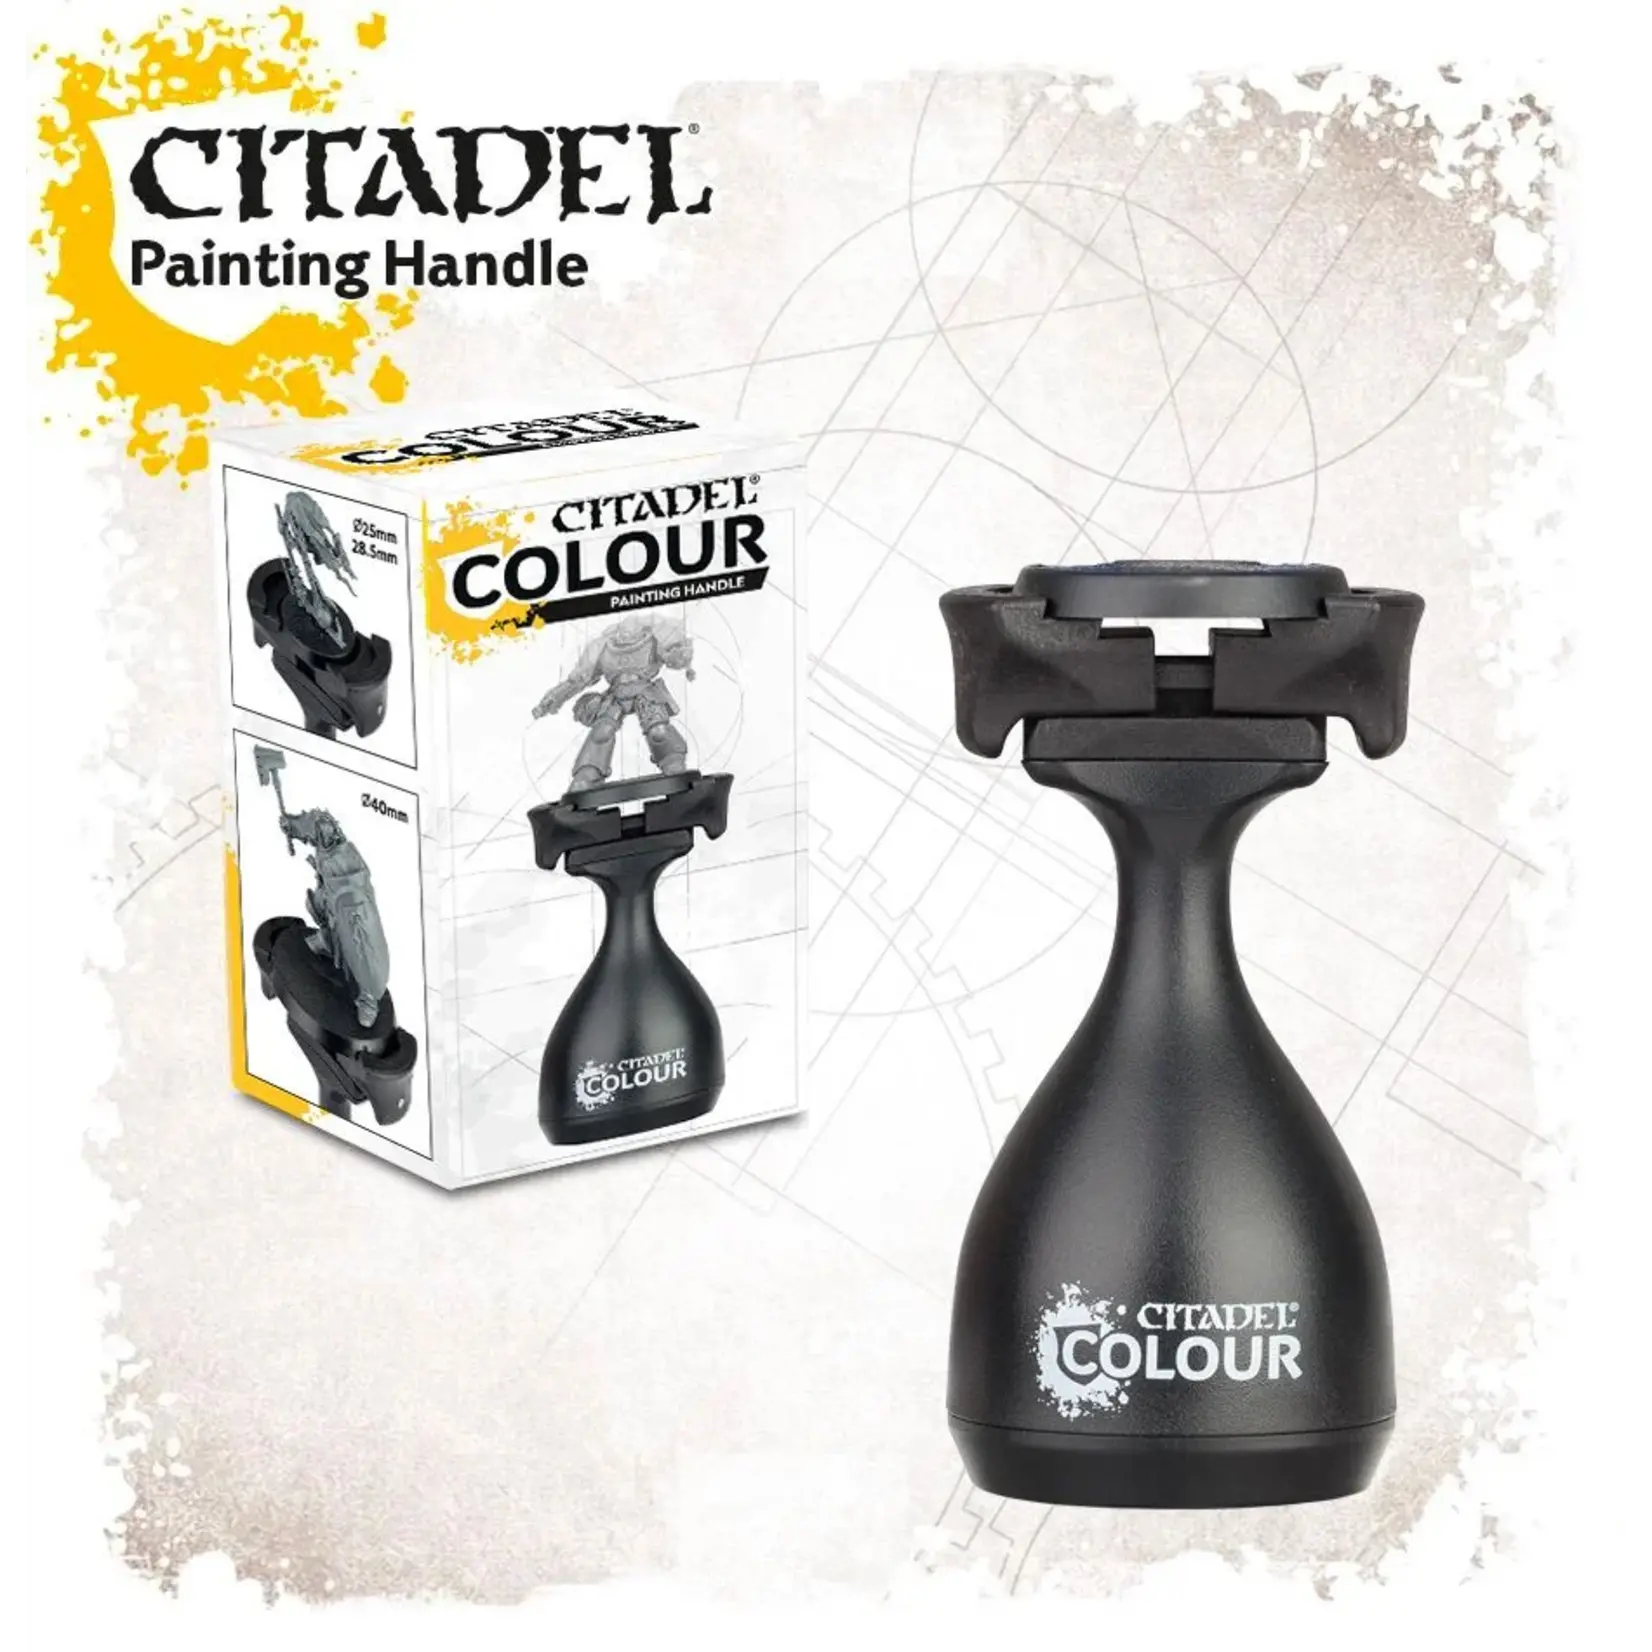 citadel Citadel Colour Painting Handle (MK2)